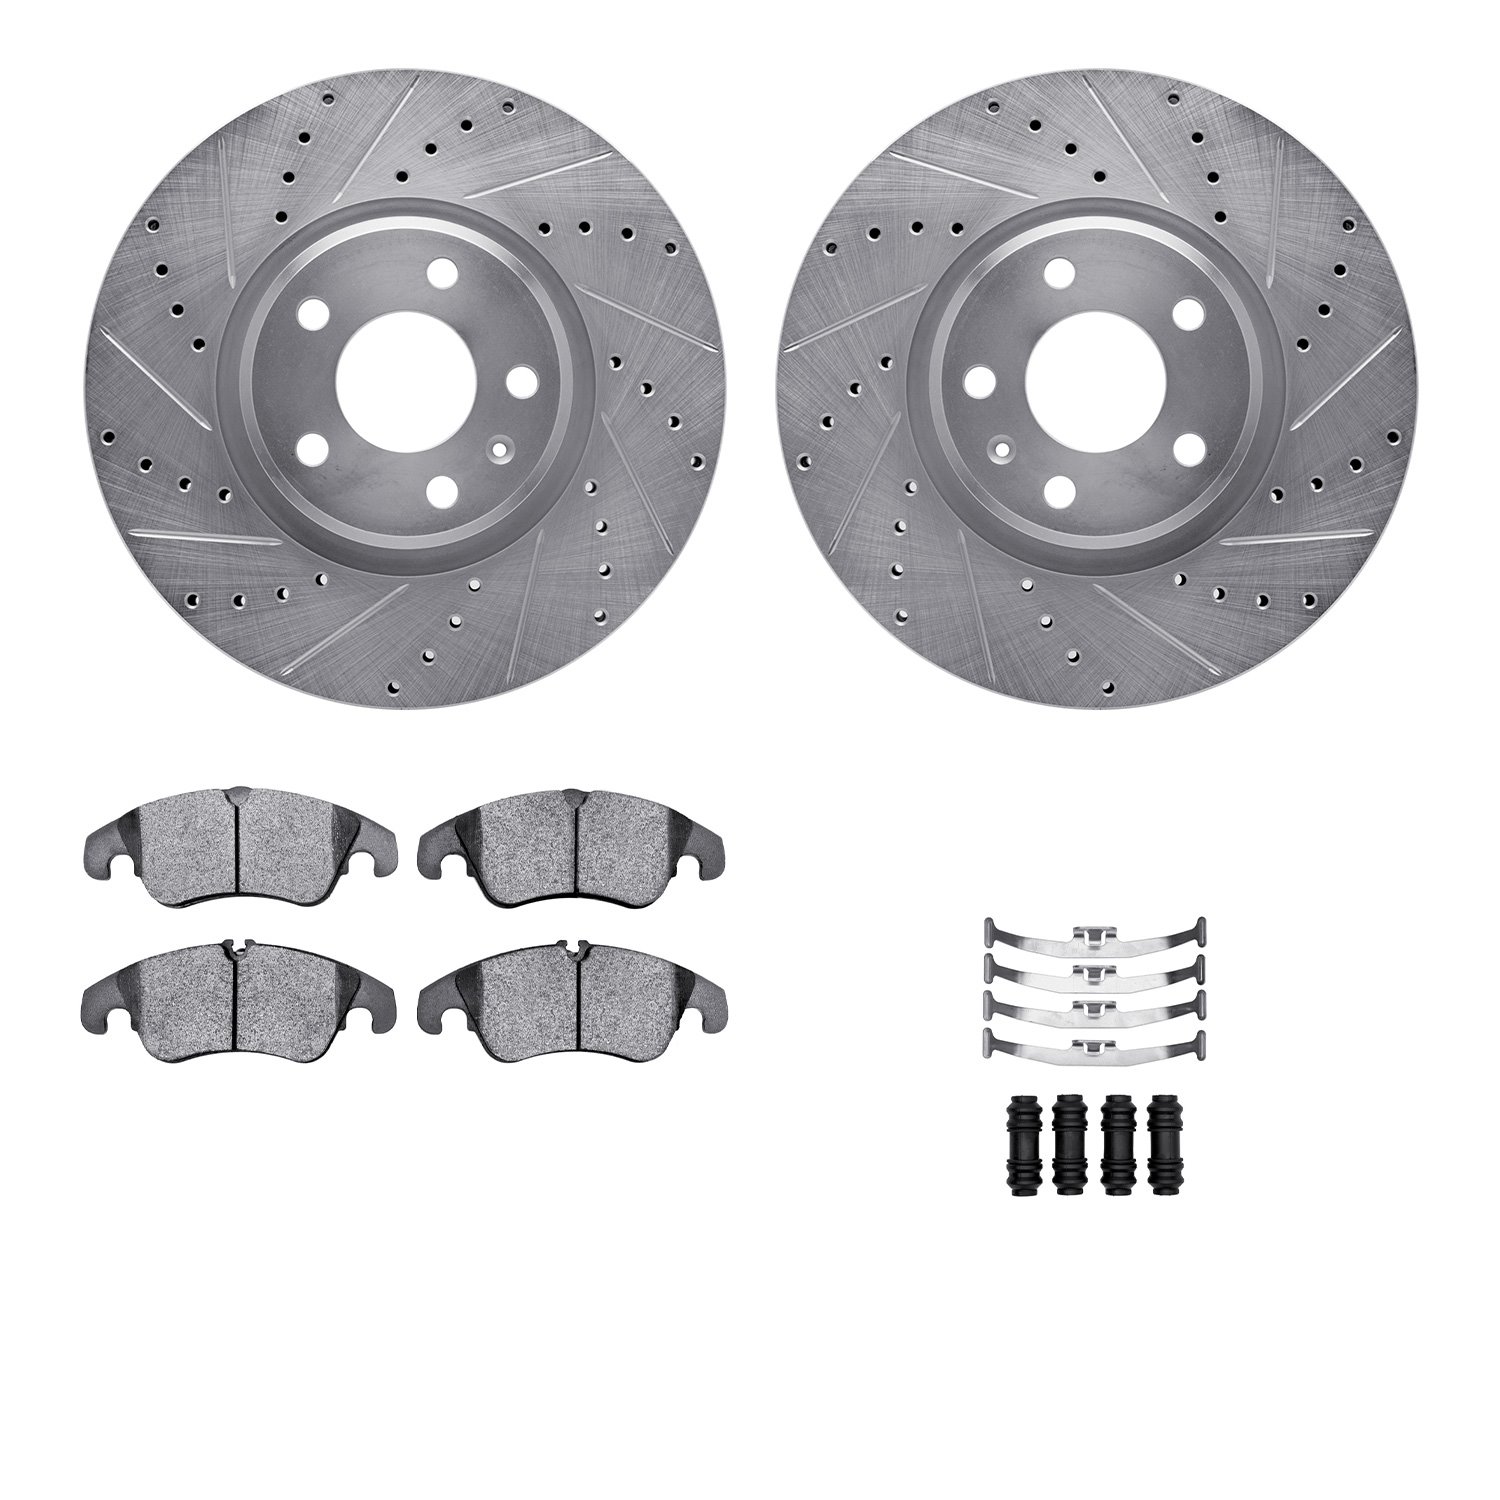 7612-73054 Drilled/Slotted Brake Rotors w/5000 Euro Ceramic Brake Pads Kit & Hardware [Silver], 2011-2013 Audi/Volkswagen, Posit